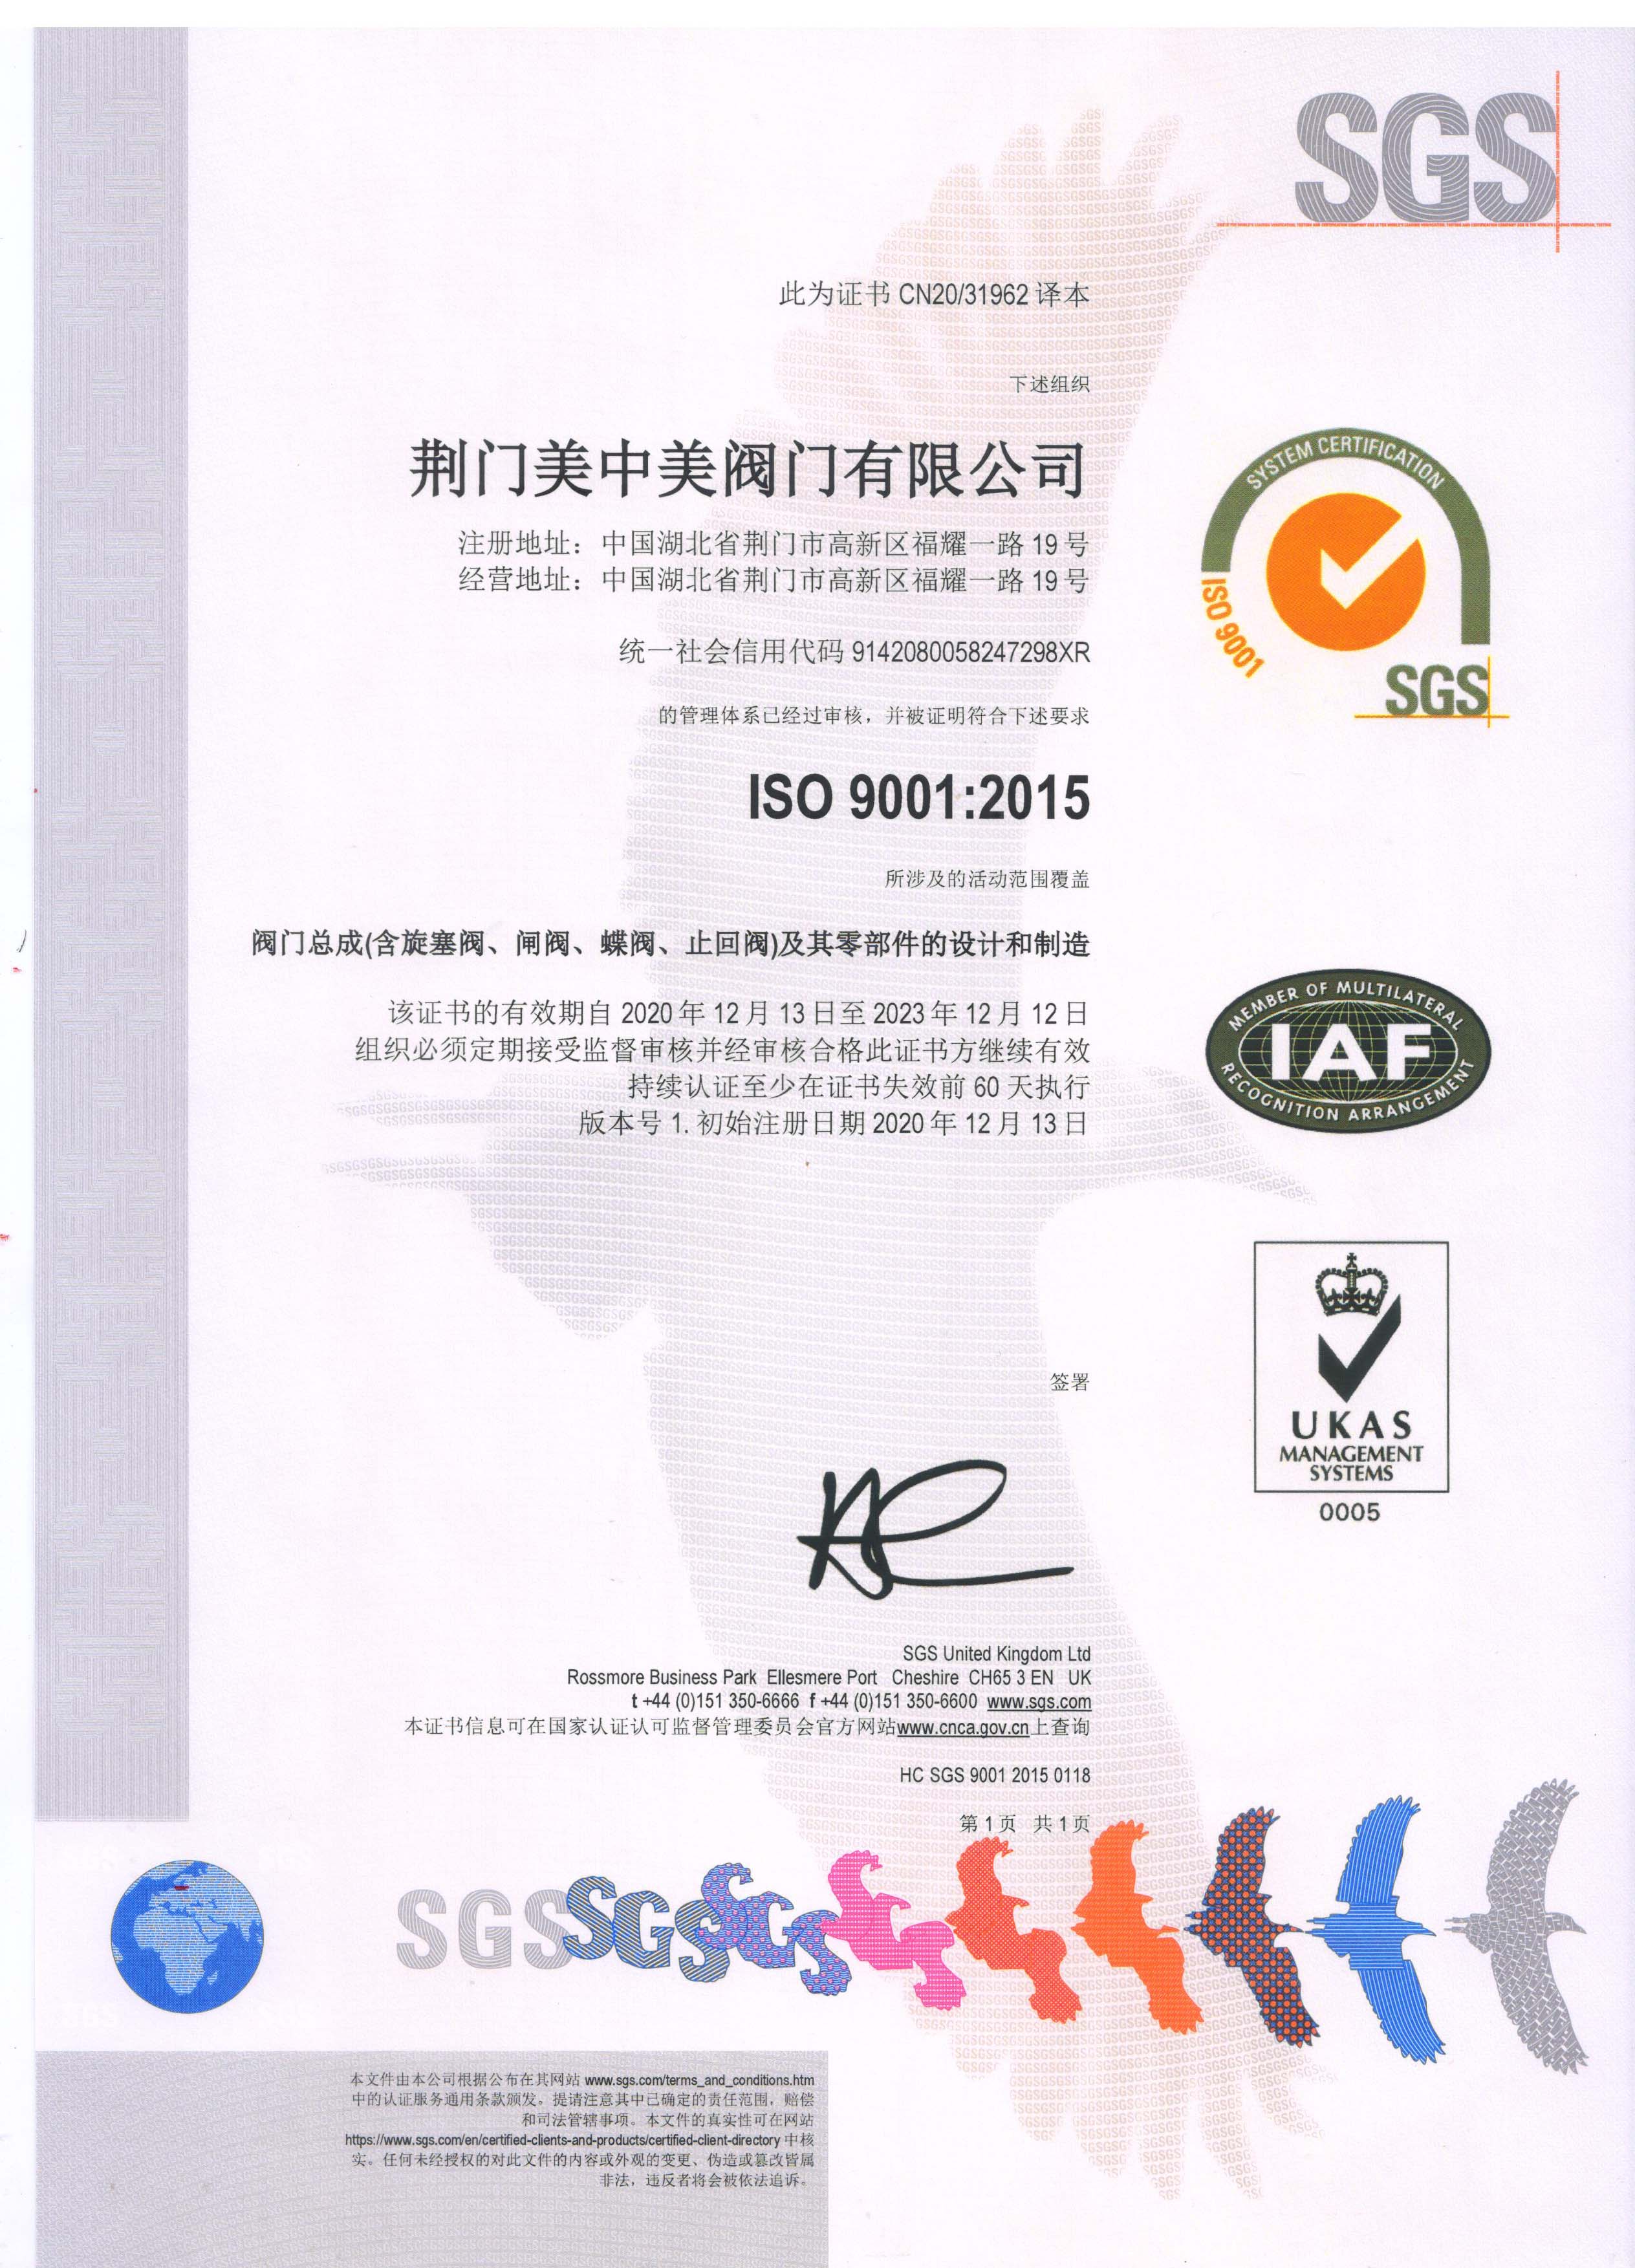 荣誉资质标题一--ISO9001:2015质量体系认证证书